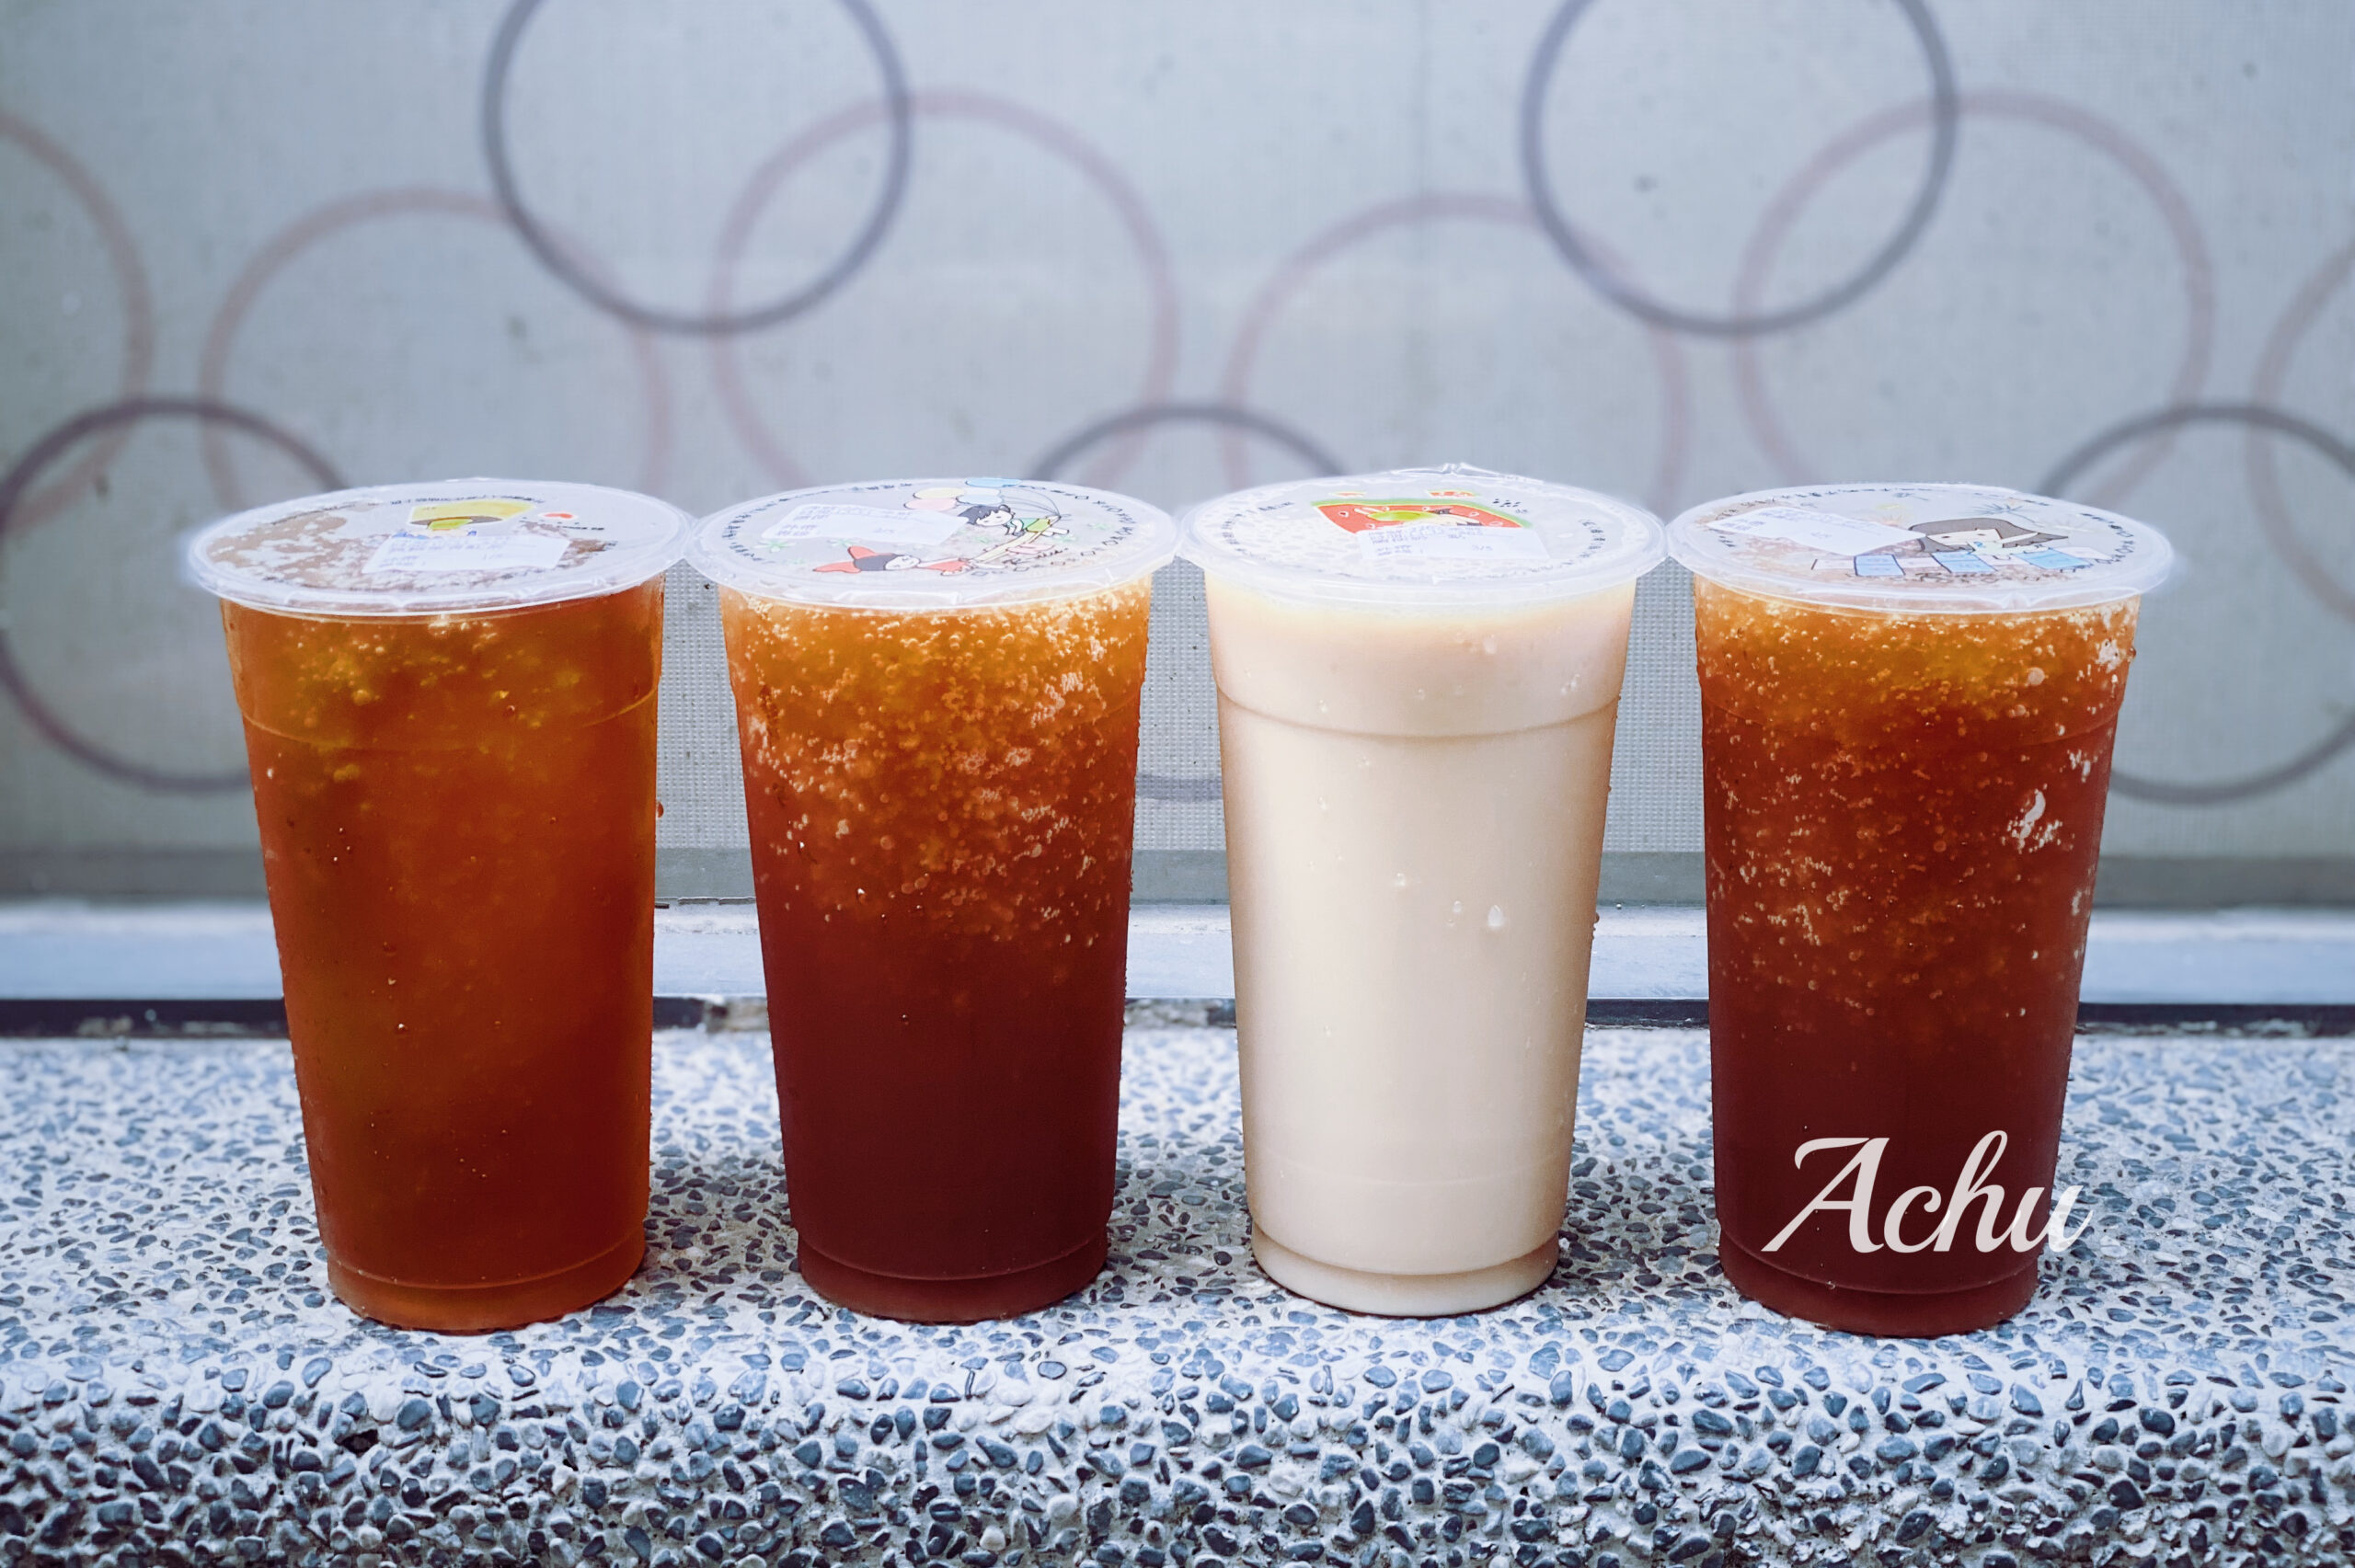 【飲料推薦】萬金紅茶冰 堅持只提供好品質茶飲的個性飲料店 (菜單)